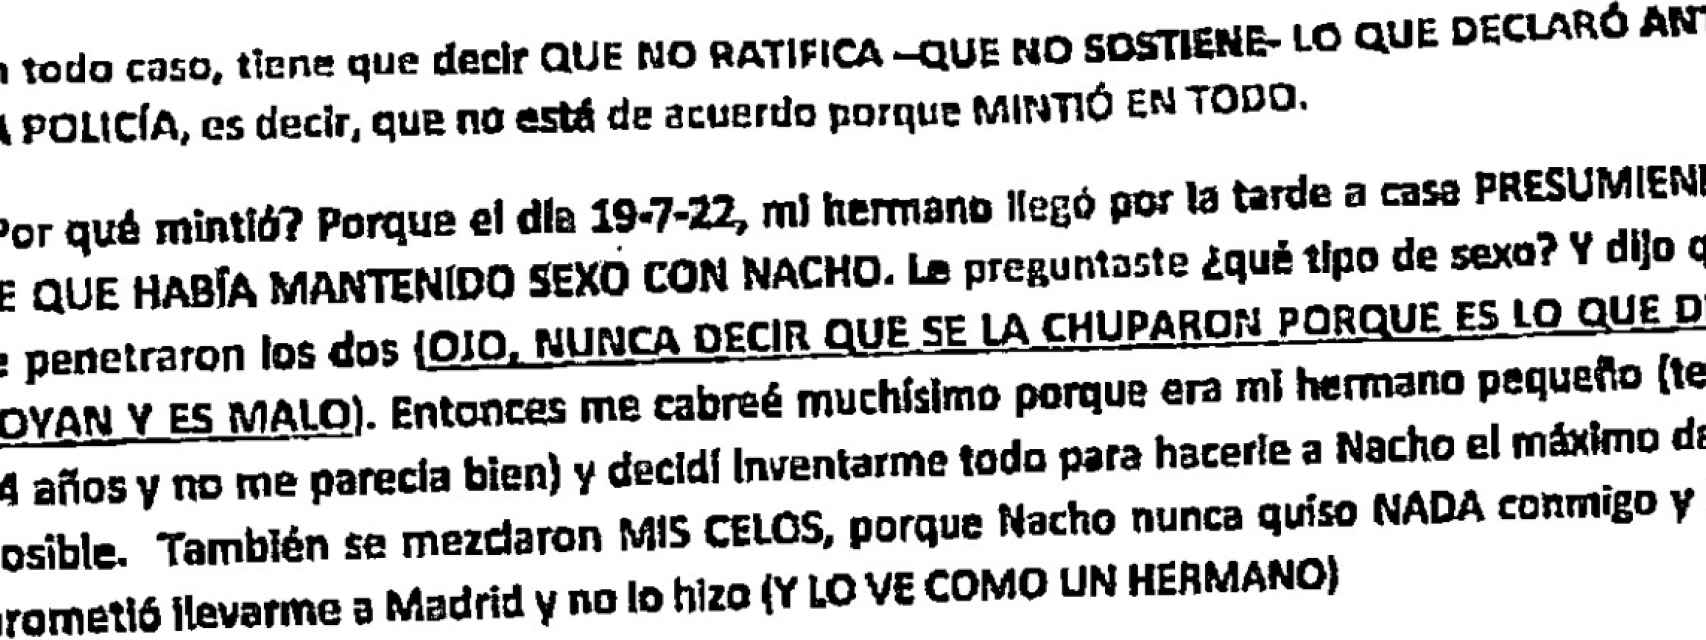 Extracto de uno de los guiones que obraba en poder del adolescentes que delató la supuesta trama para modificar los testimonios en el juzgado contra Nacho Jacob.